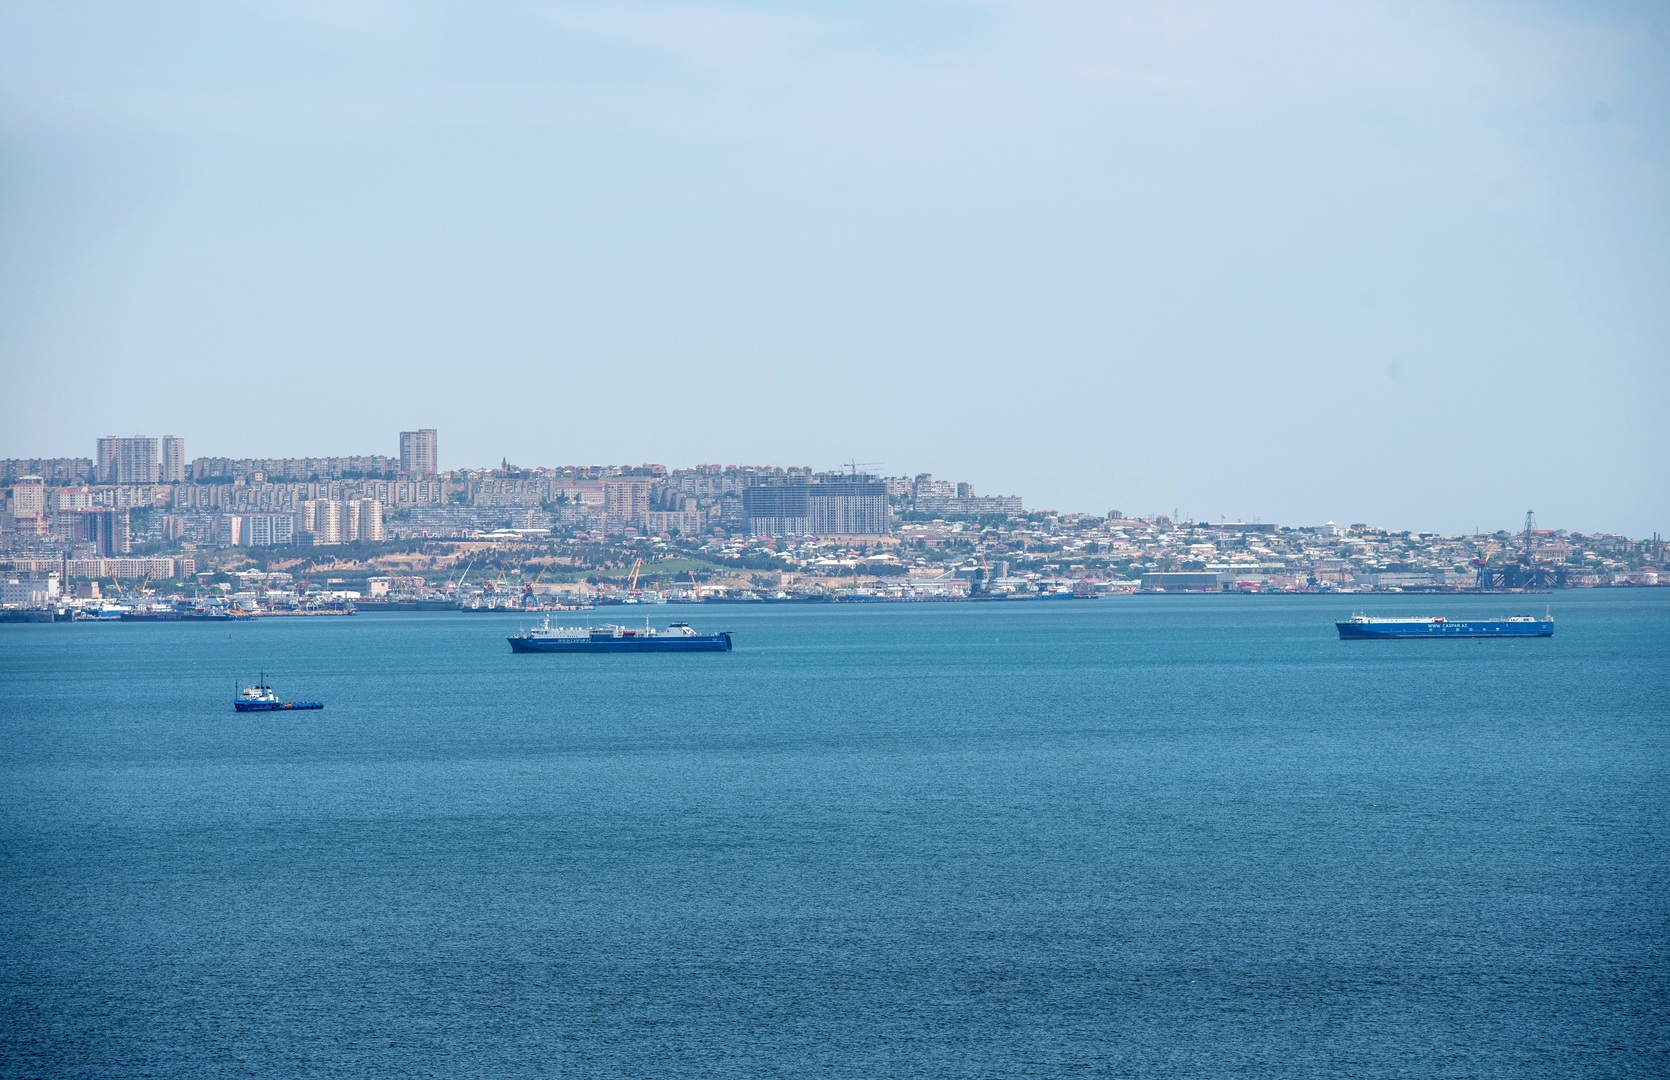 بحر قزوين (صورة من الأرشيف)